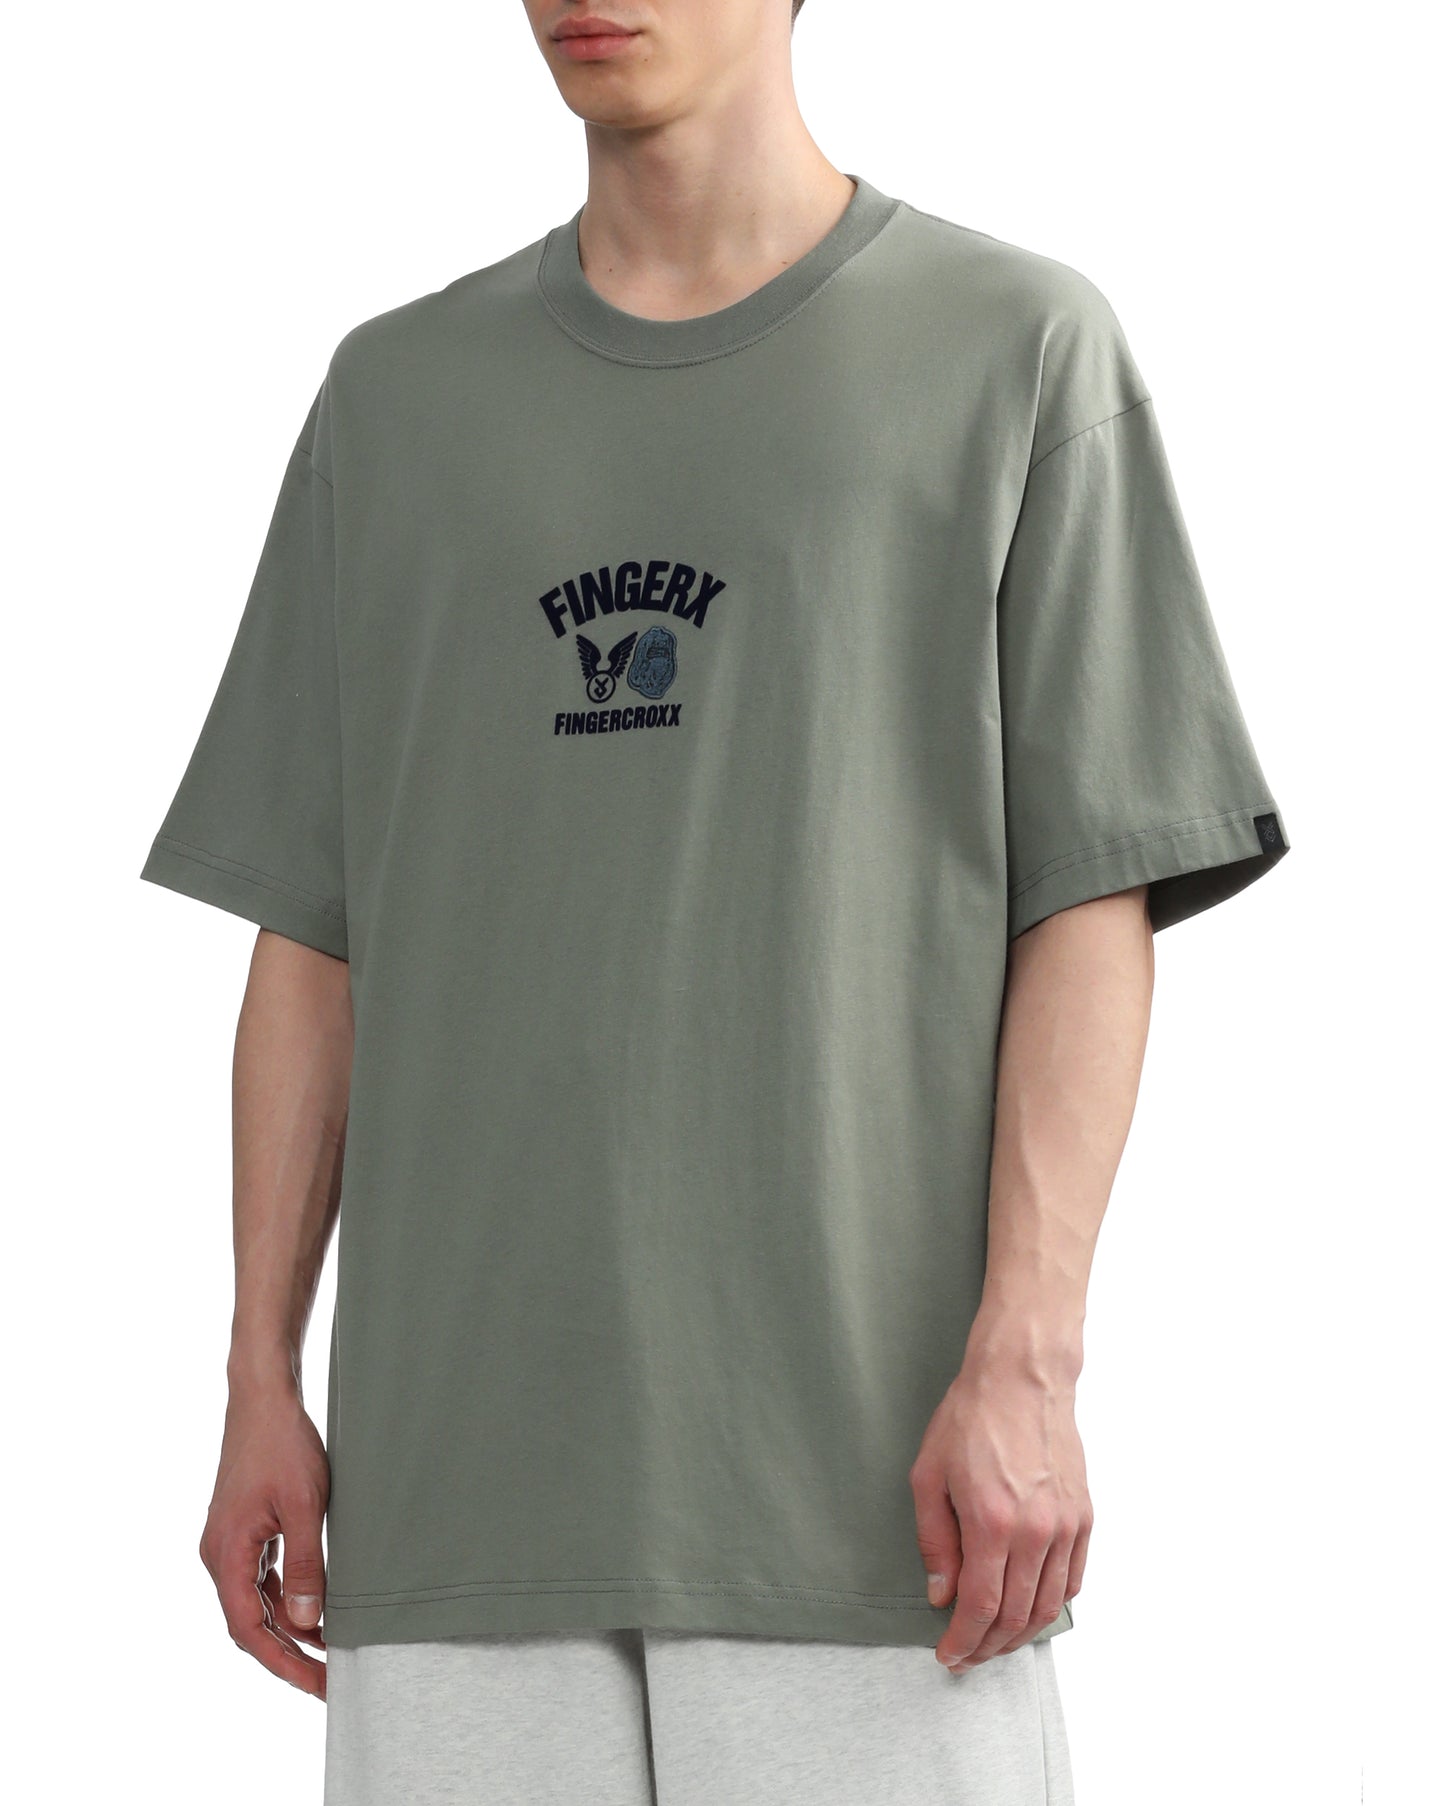 Men Military T-shirt in Light Khaki